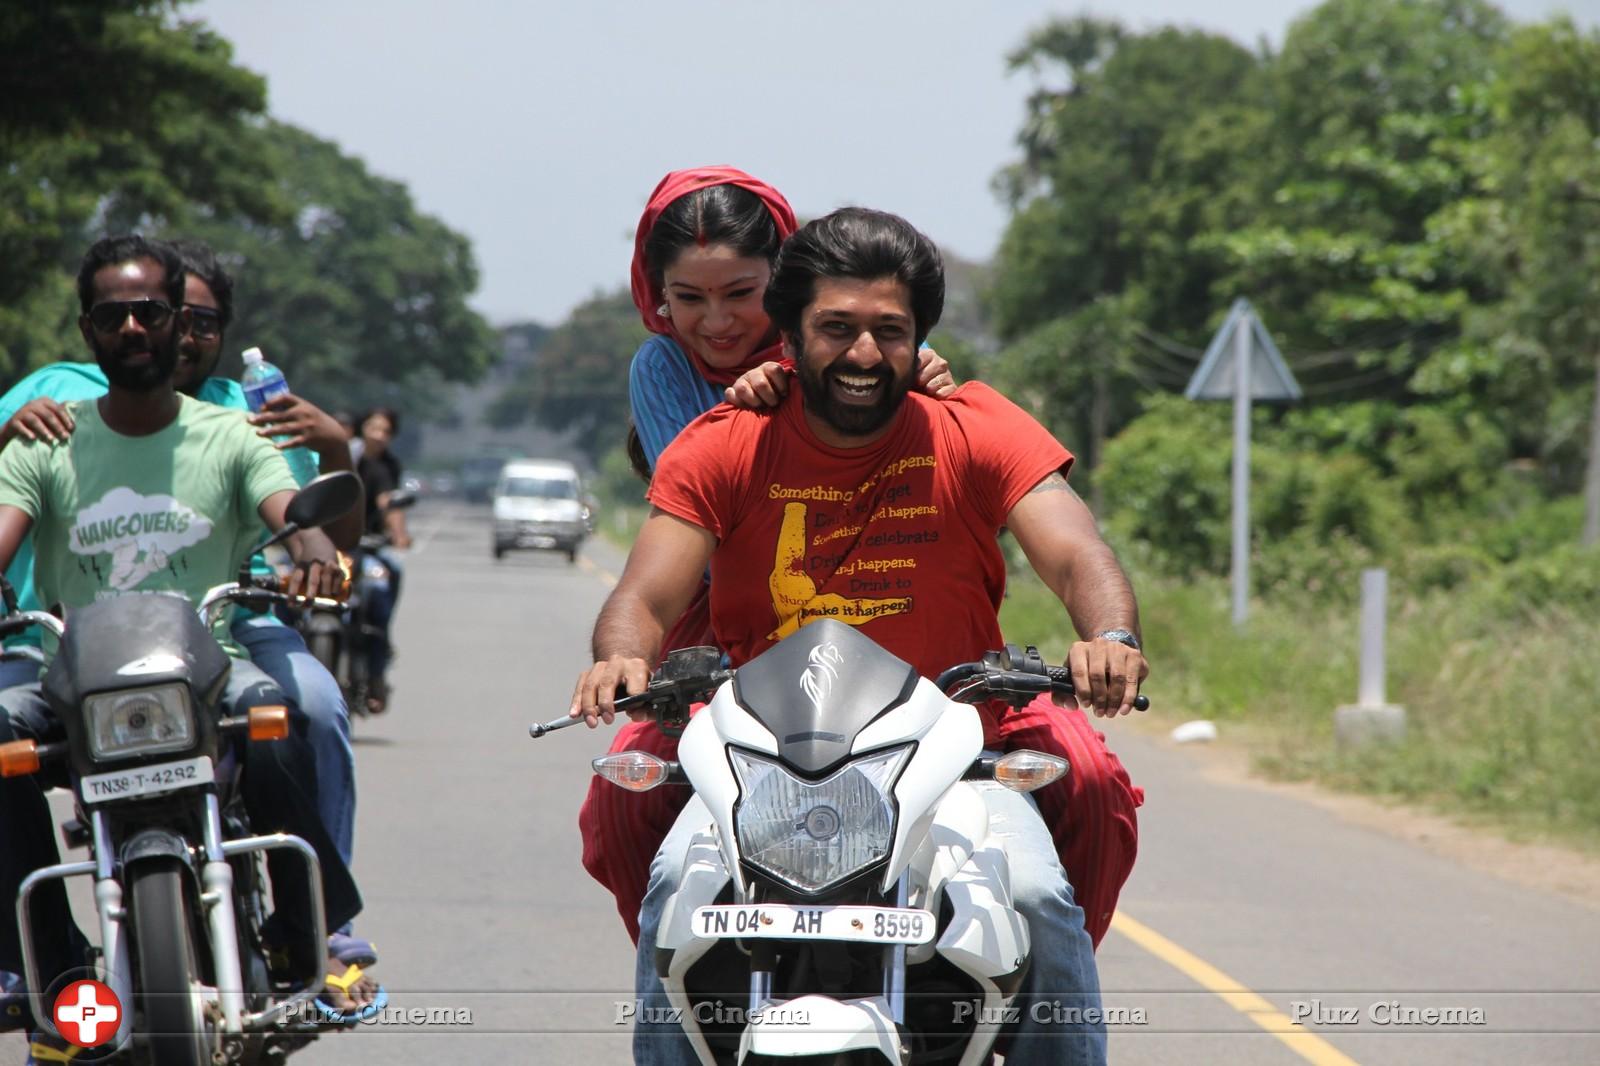 Mahabalipuram Movie New Stills | Picture 987933